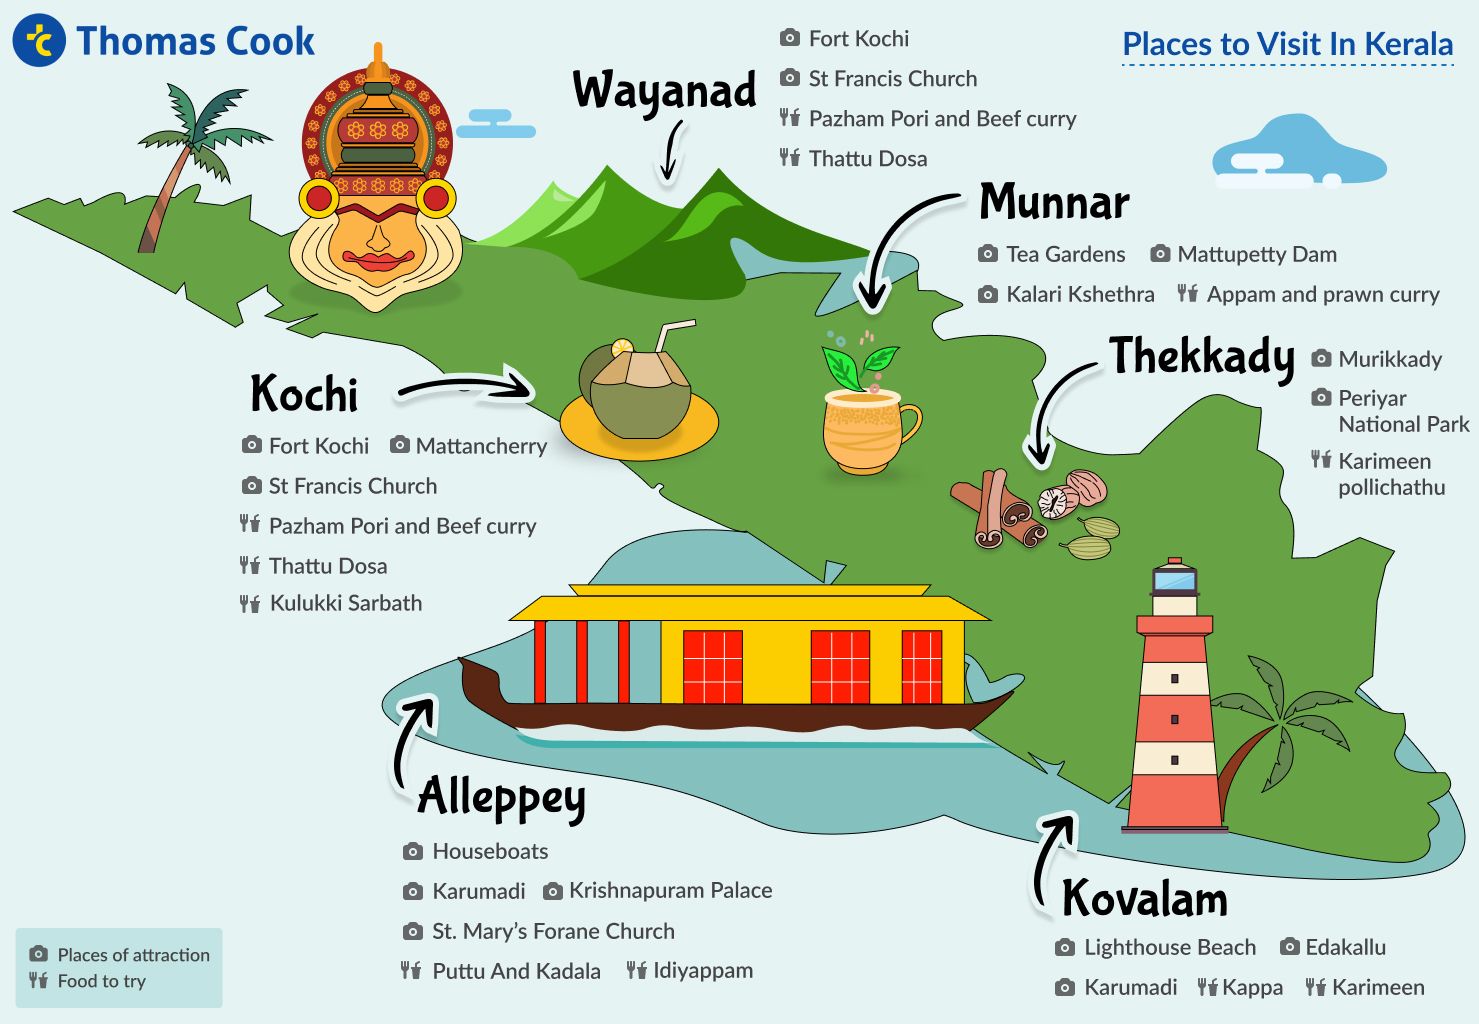 kerala tourism guide